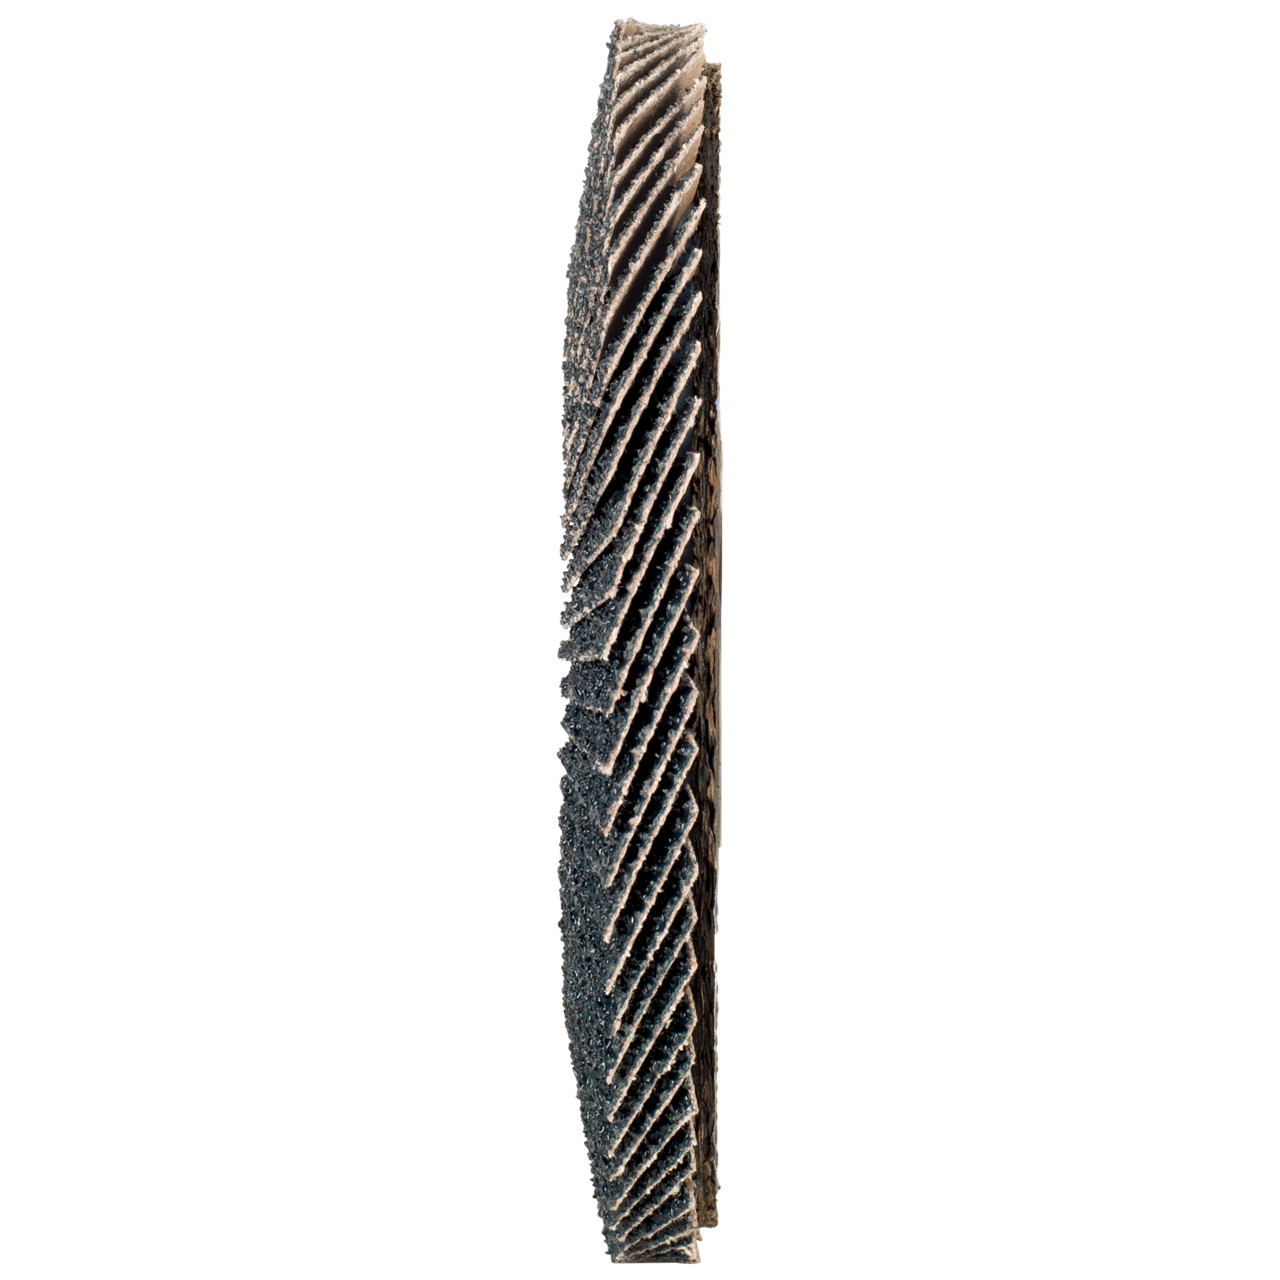 Rondella dentata Tyrolit DxH 125x22.2 2in1 per acciaio e acciaio inox, P120, forma: 27A - versione a gomito (versione con corpo portante in fibra di vetro), Art. 643805